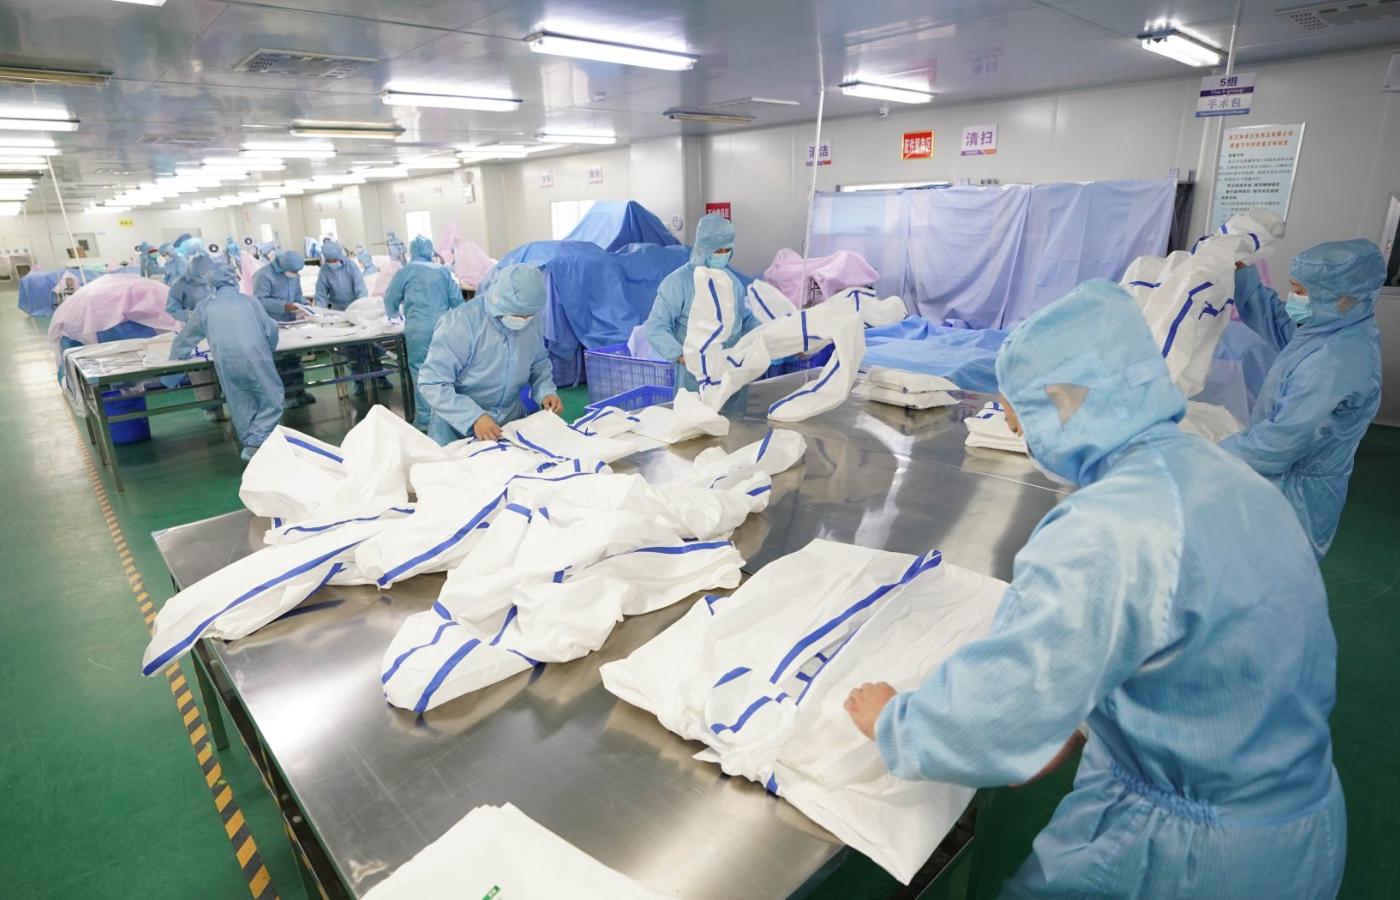 Wiele gałęzi gospodarki w odizolowanym od świata Wuhanie przyhamowało, ale produkcja masek i kombinezonów ochronnych niezbędnych w walce z epidemią koronawirusa przyspieszyła.